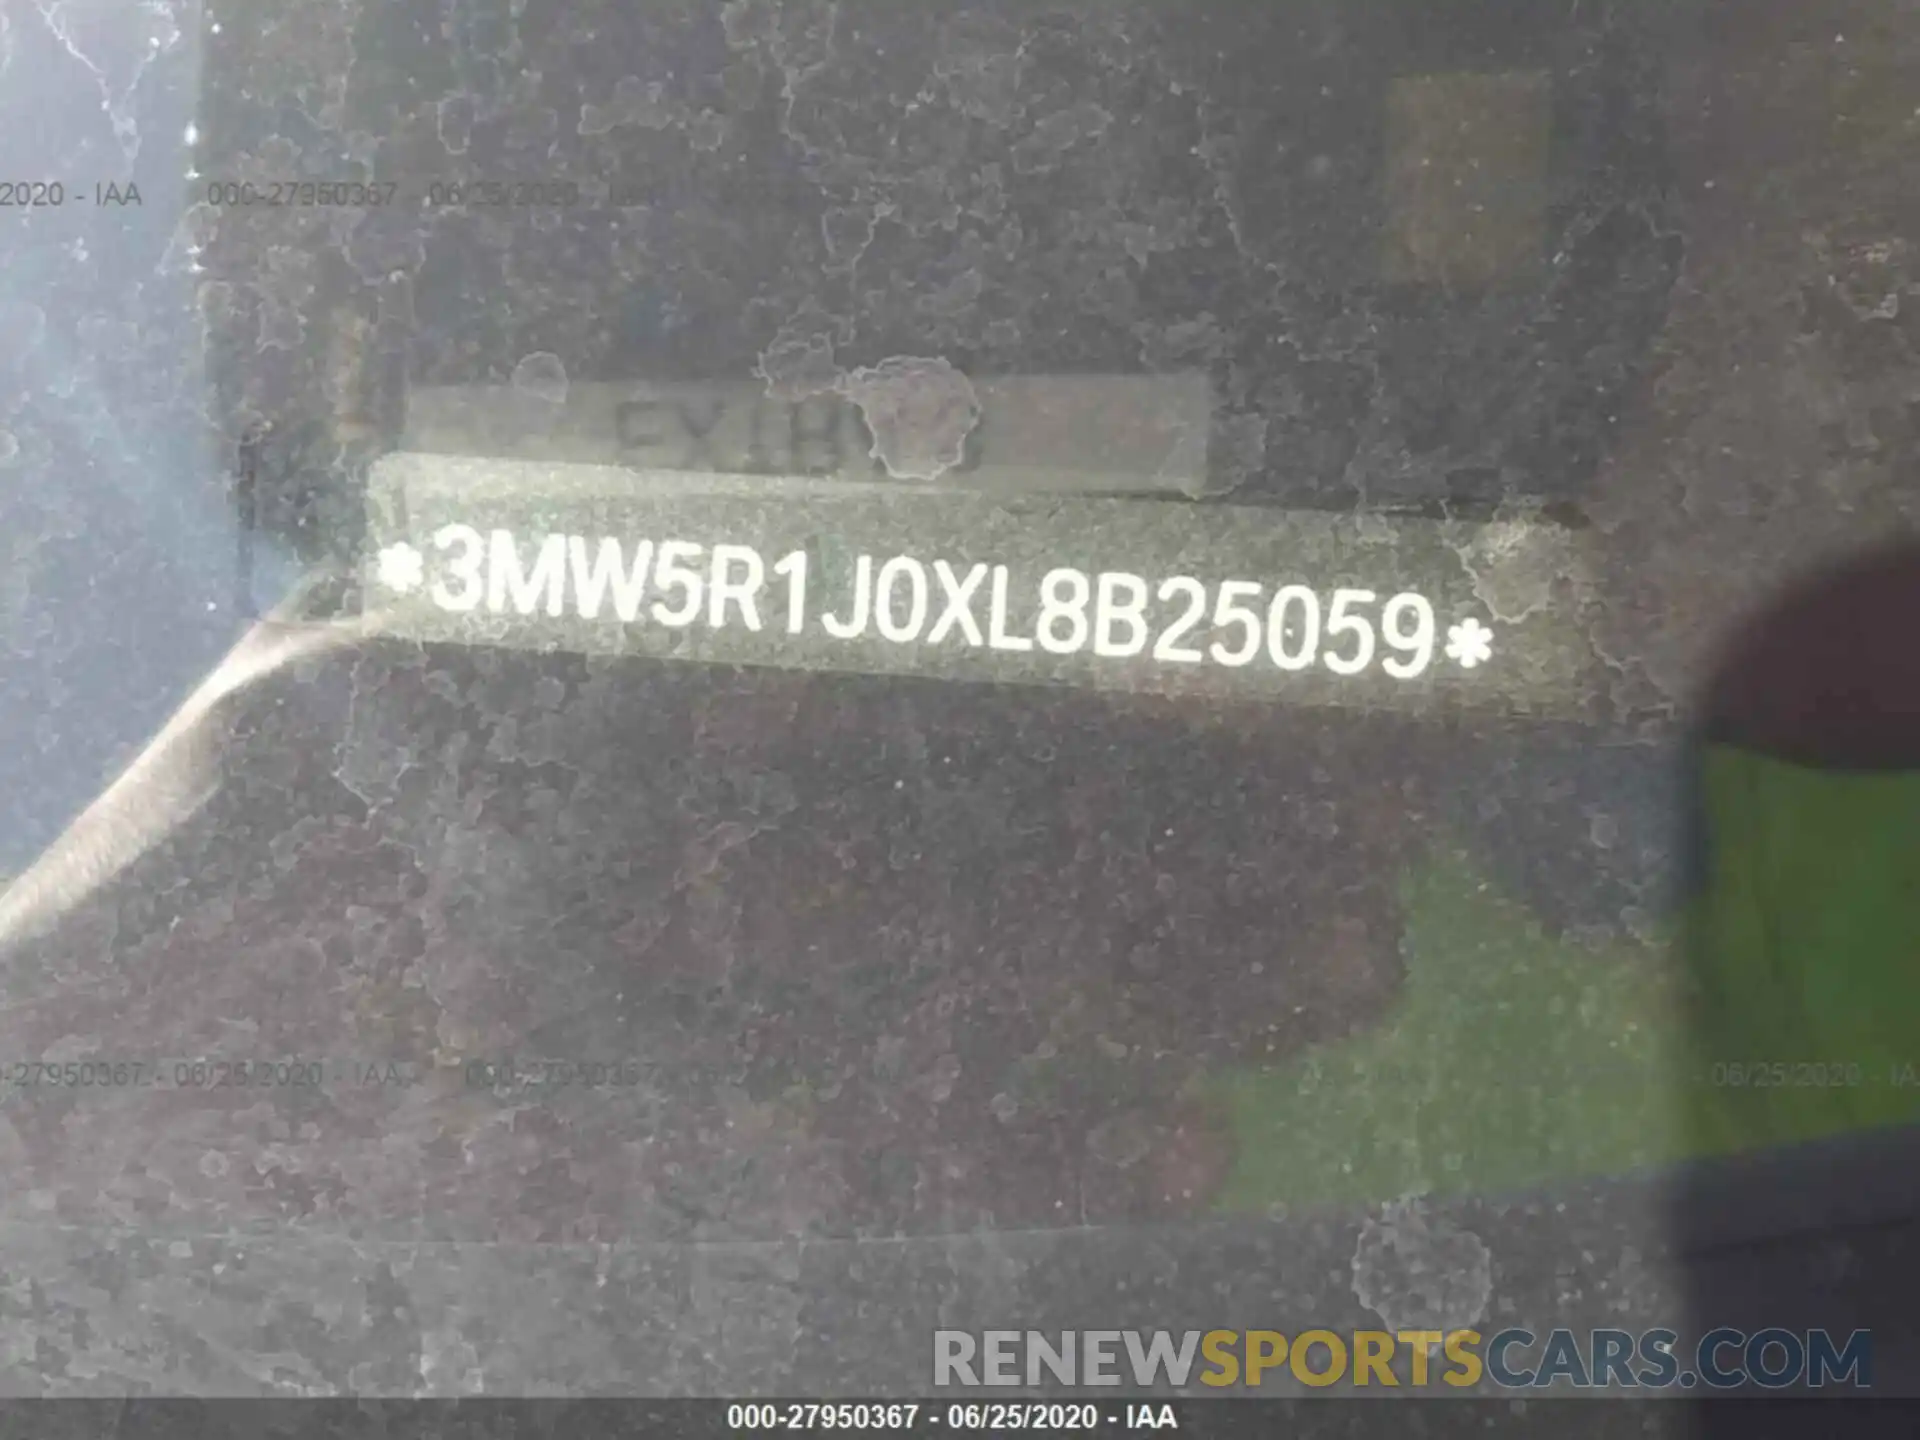 9 Photograph of a damaged car 3MW5R1J0XL8B25059 BMW 330I 2020